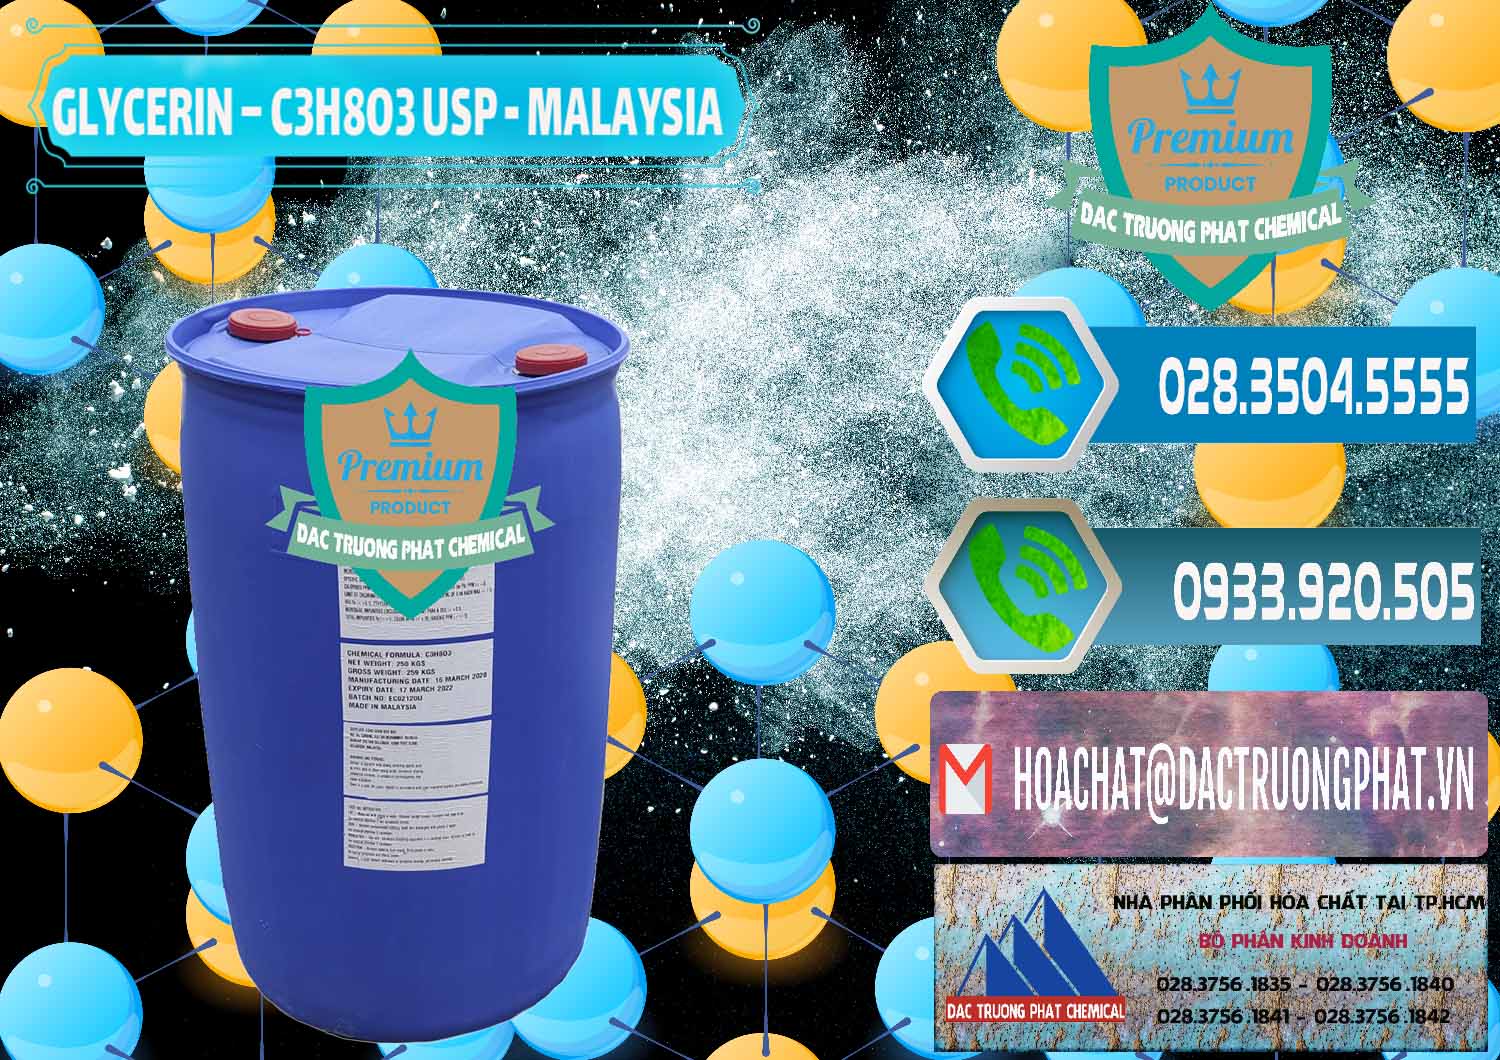 Nơi chuyên kinh doanh và bán Glycerin – C3H8O3 USP Malaysia - 0233 - Công ty kinh doanh & cung cấp hóa chất tại TP.HCM - congtyhoachat.net